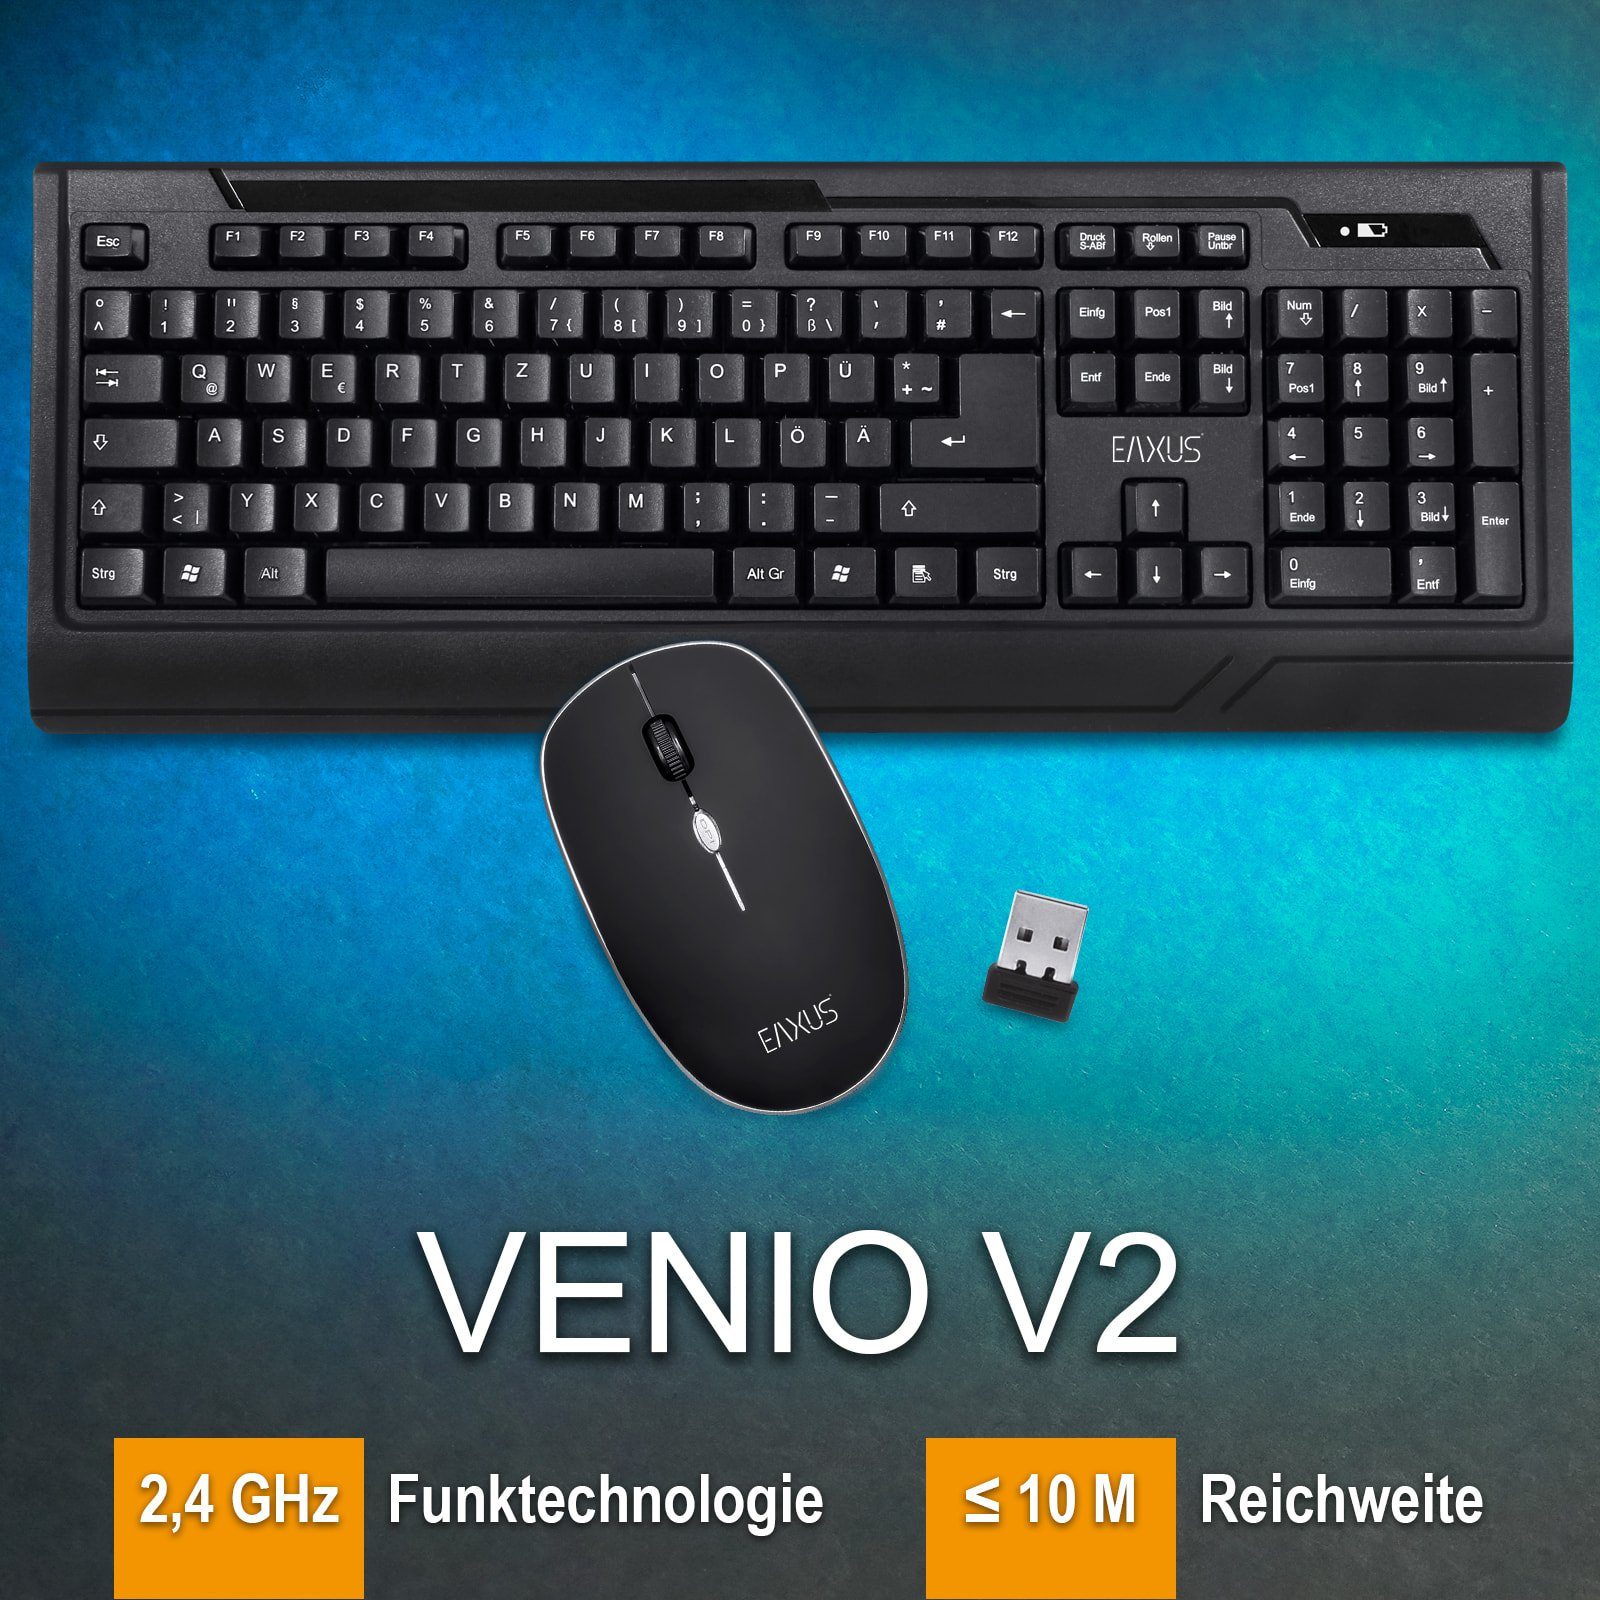 EAXUS Venio V2 Ergonomische Funktastatur und Funkmaus Tastatur- und Maus-Set,  USB Nanoempfänger, Geräuscharm - ideal fürs Büro, 1000 dpi, lange Laufzeit